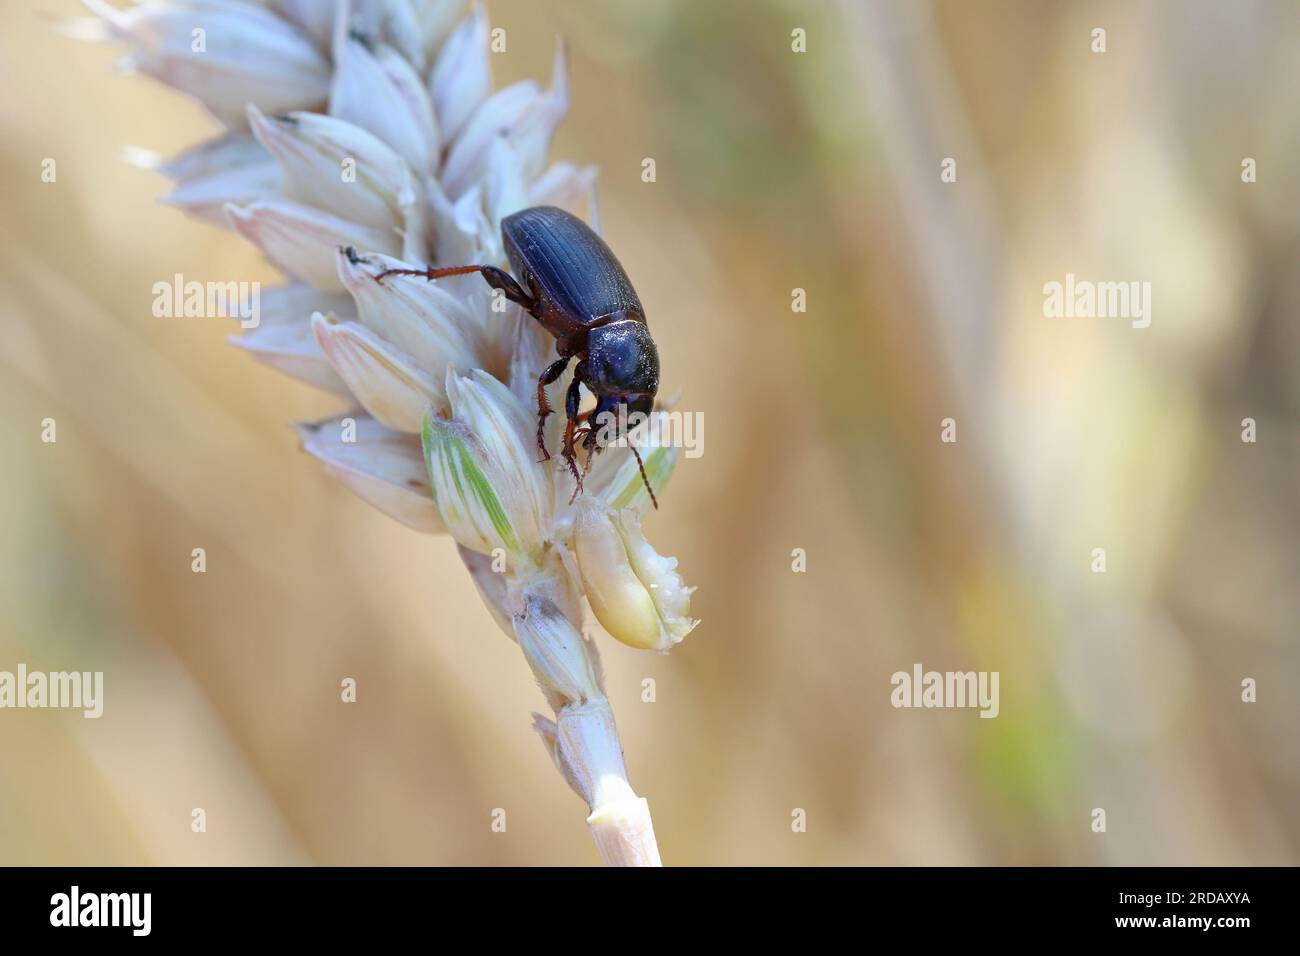 Käfer von Maismehl - Zabrus tenebrioides, der einen unreifen Getreidekern, eine Art Schwarzmaischkäfer (Carabidae), isst. Stockfoto